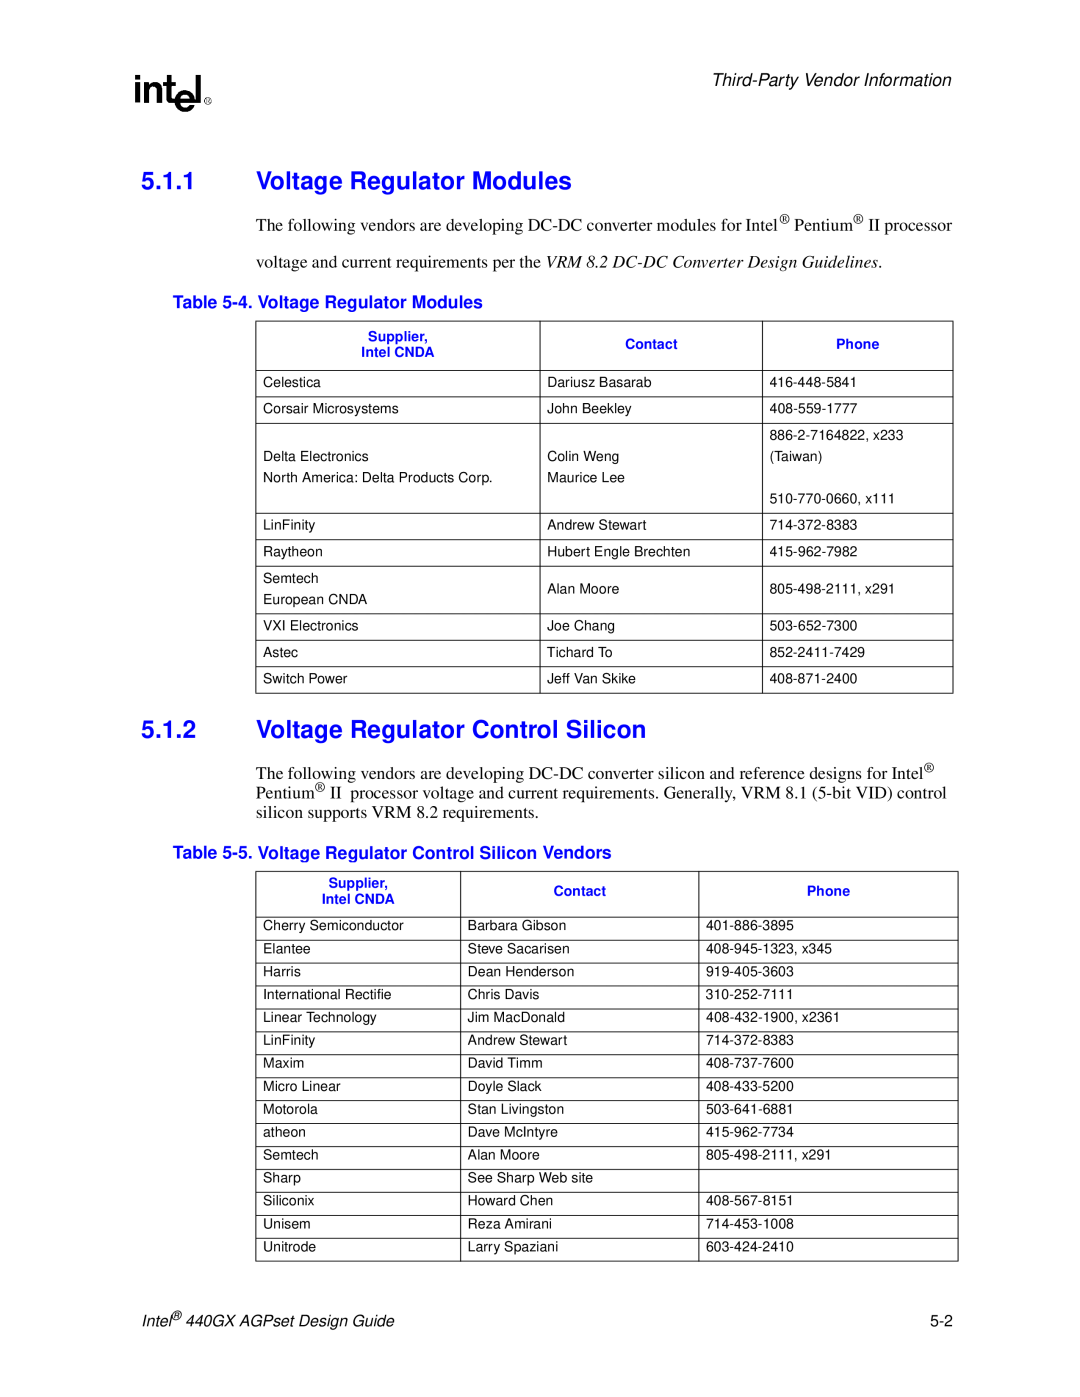 Intel 440GX manual Voltage Regulator Control Silicon, 4. Voltage Regulator Modules, Third-Party Vendor Information 